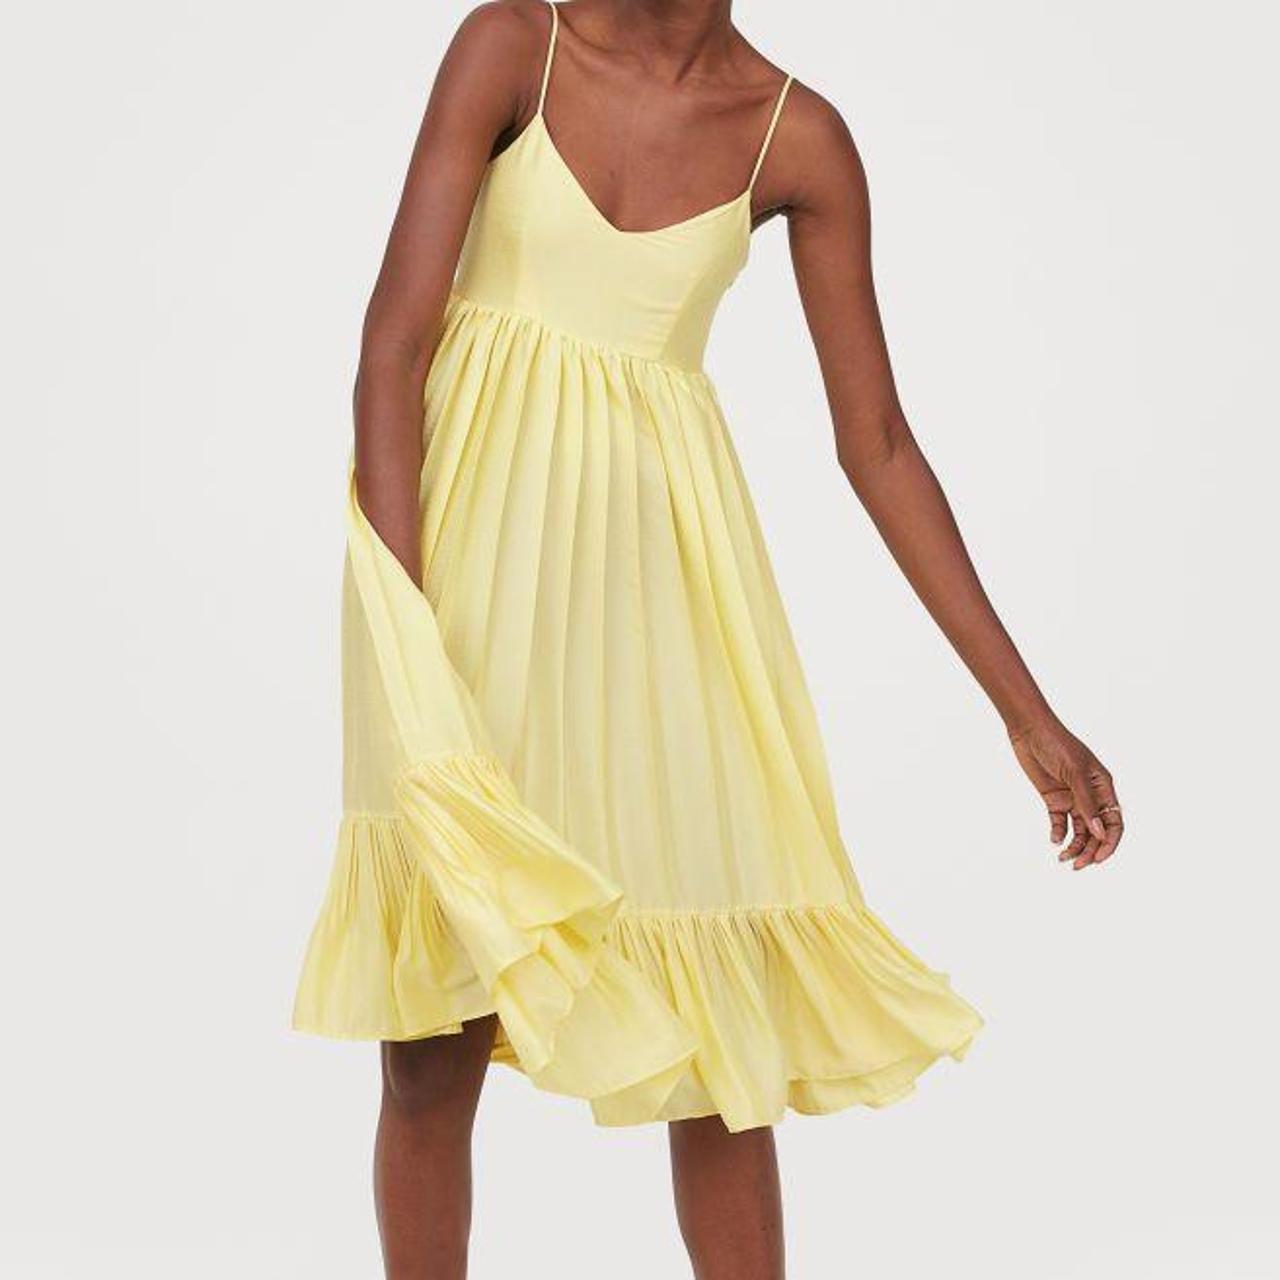 H&M Women's Yellow Dress | Depop